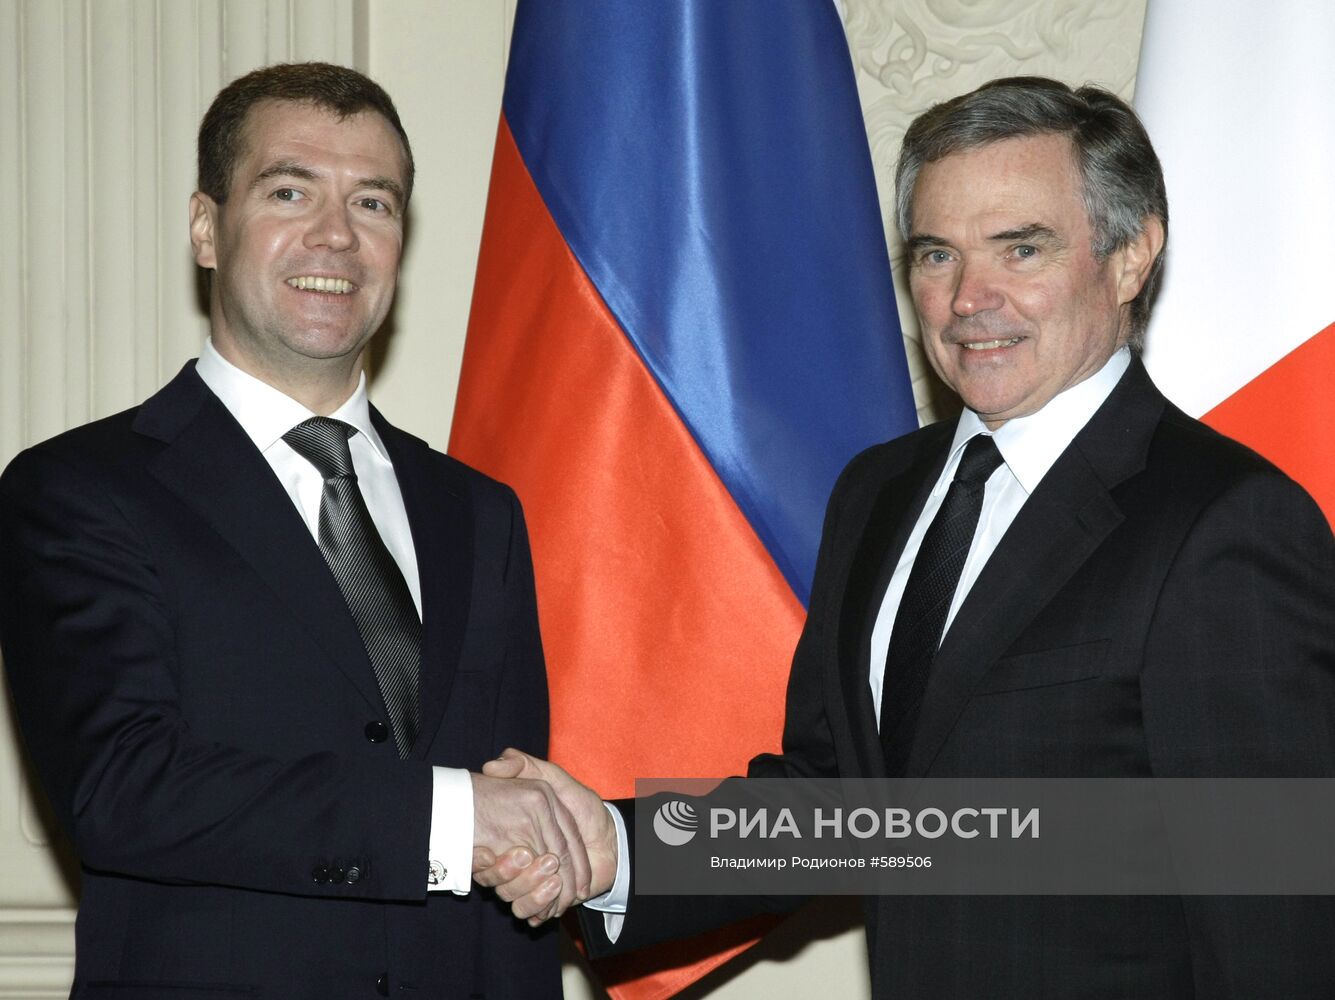 Государственный визит Д.Медведева в Париж. День второй